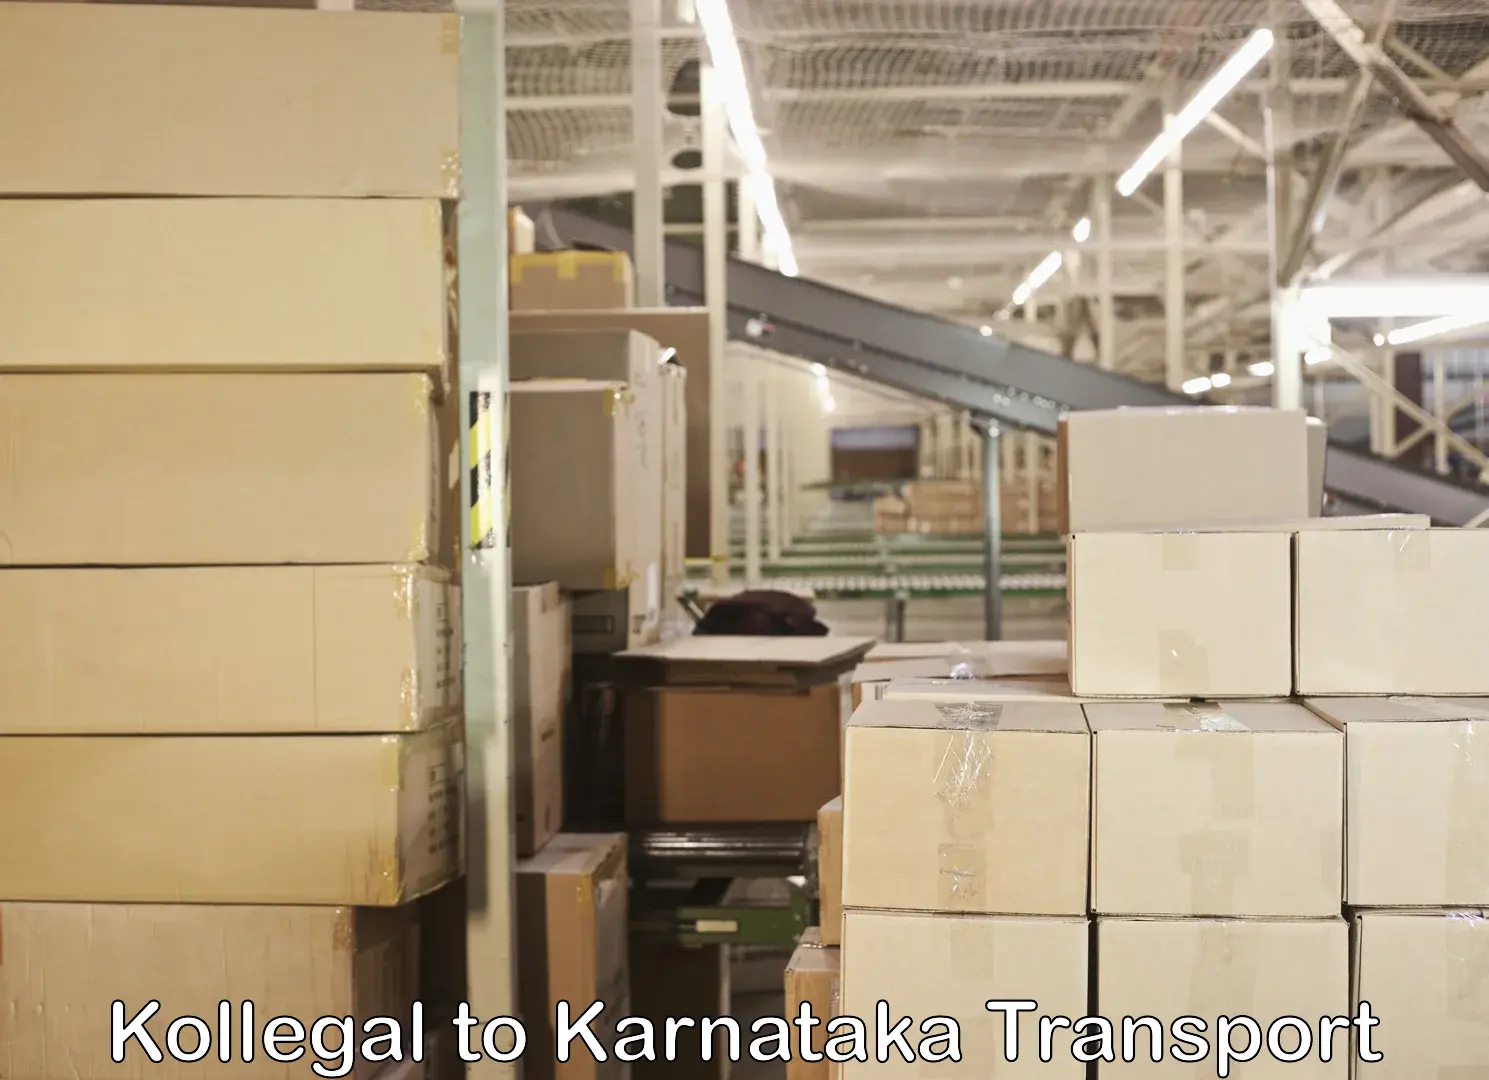 Lorry transport service Kollegal to Kanjarakatte